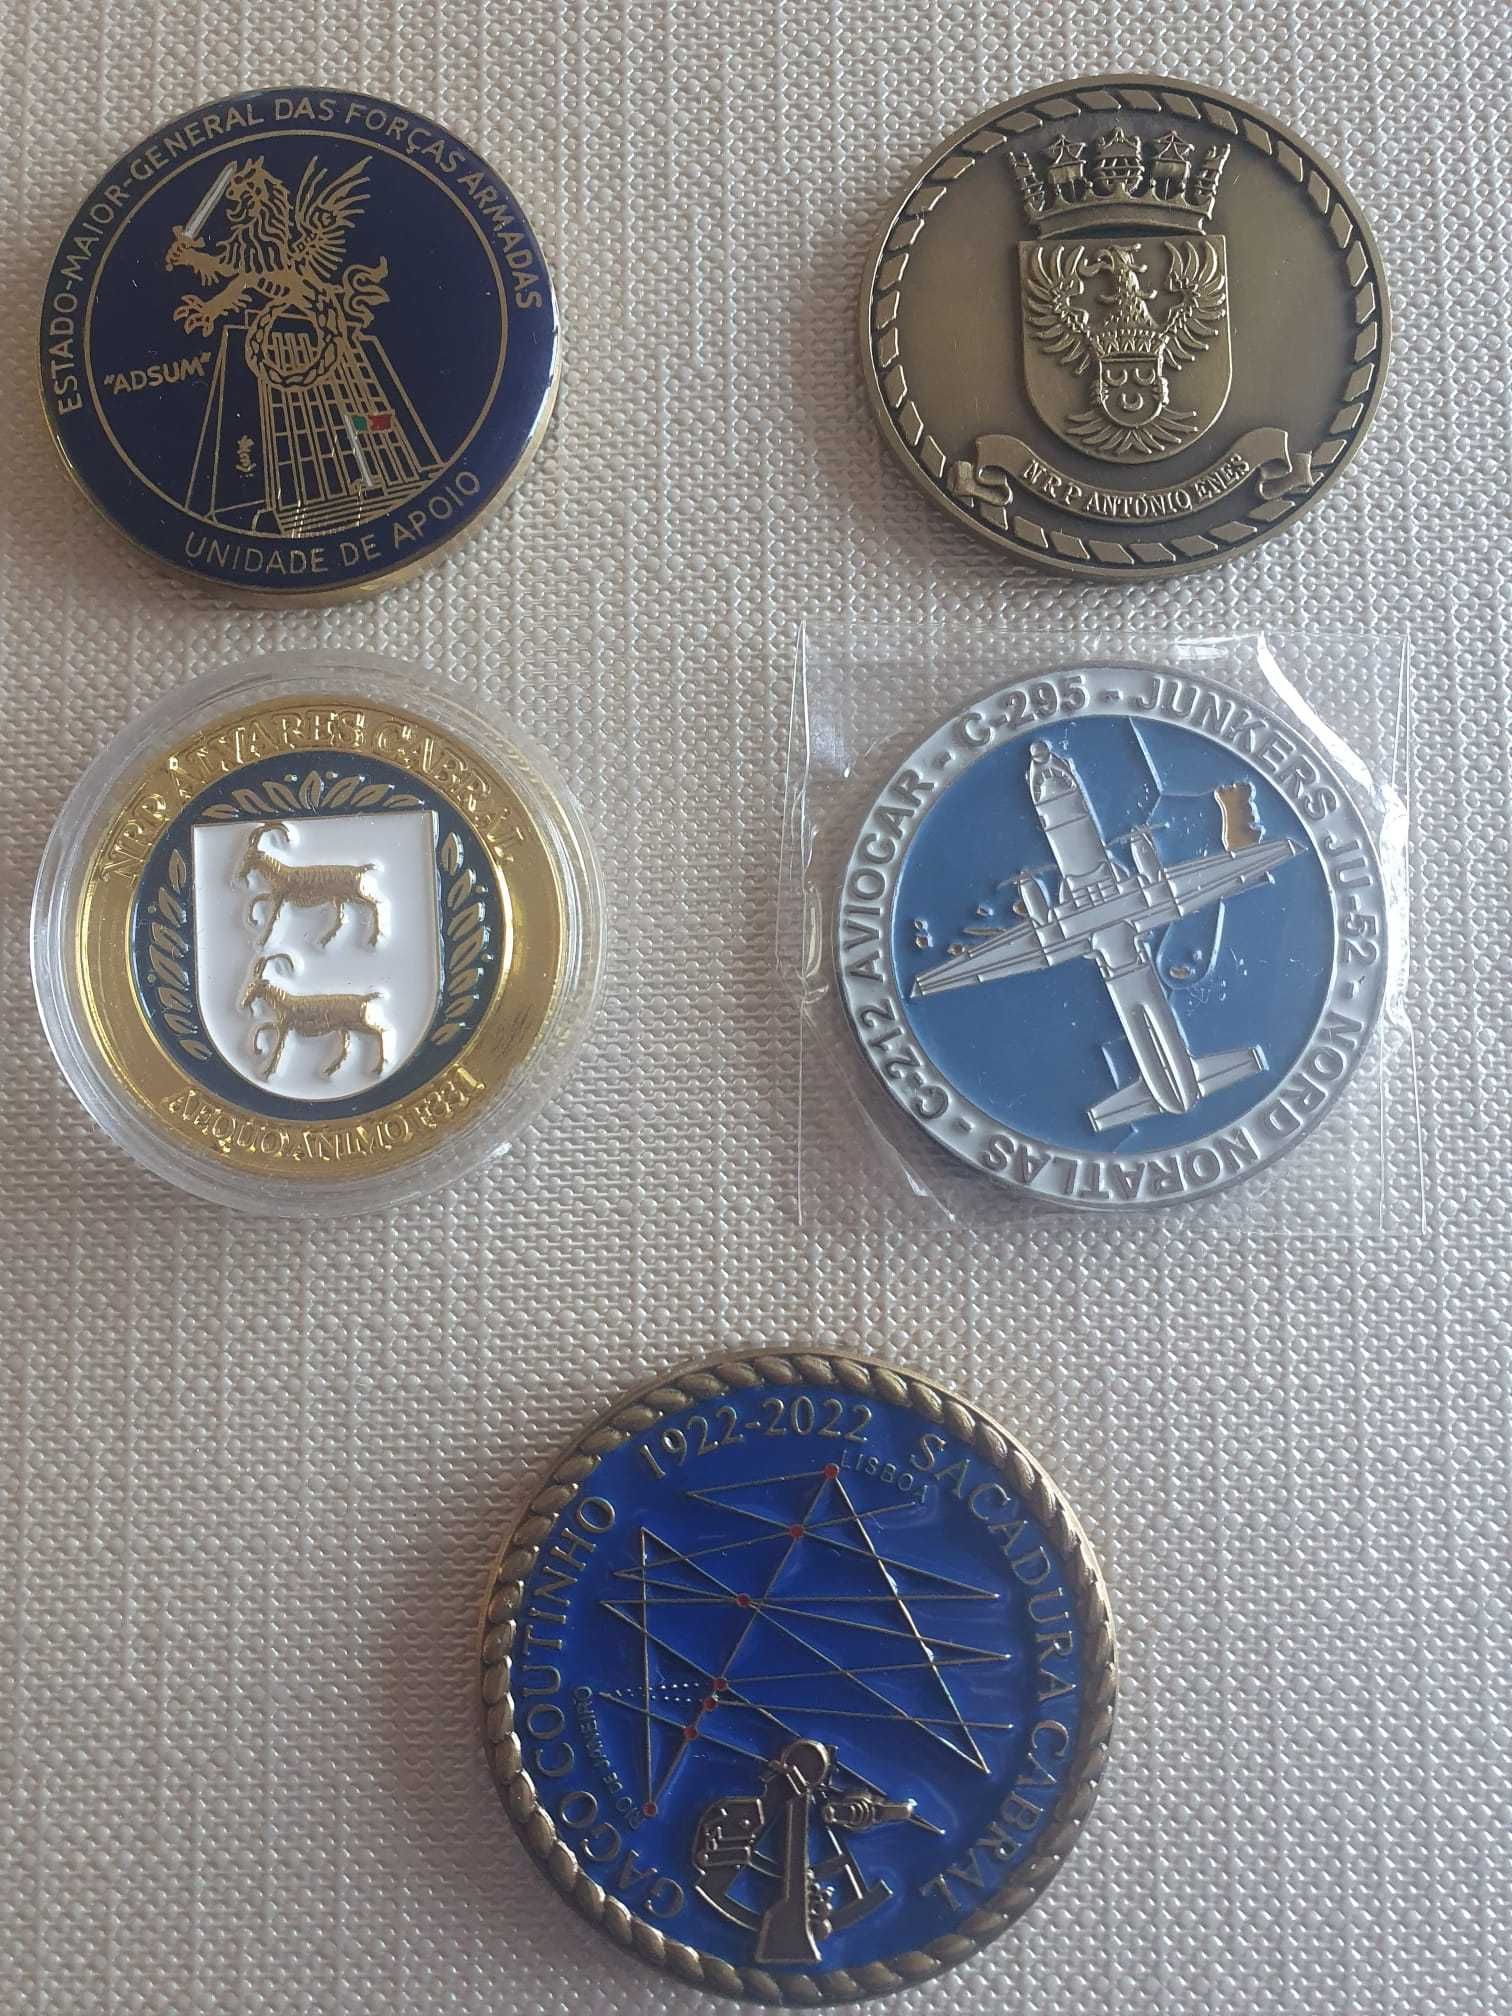 Coins militares Várias